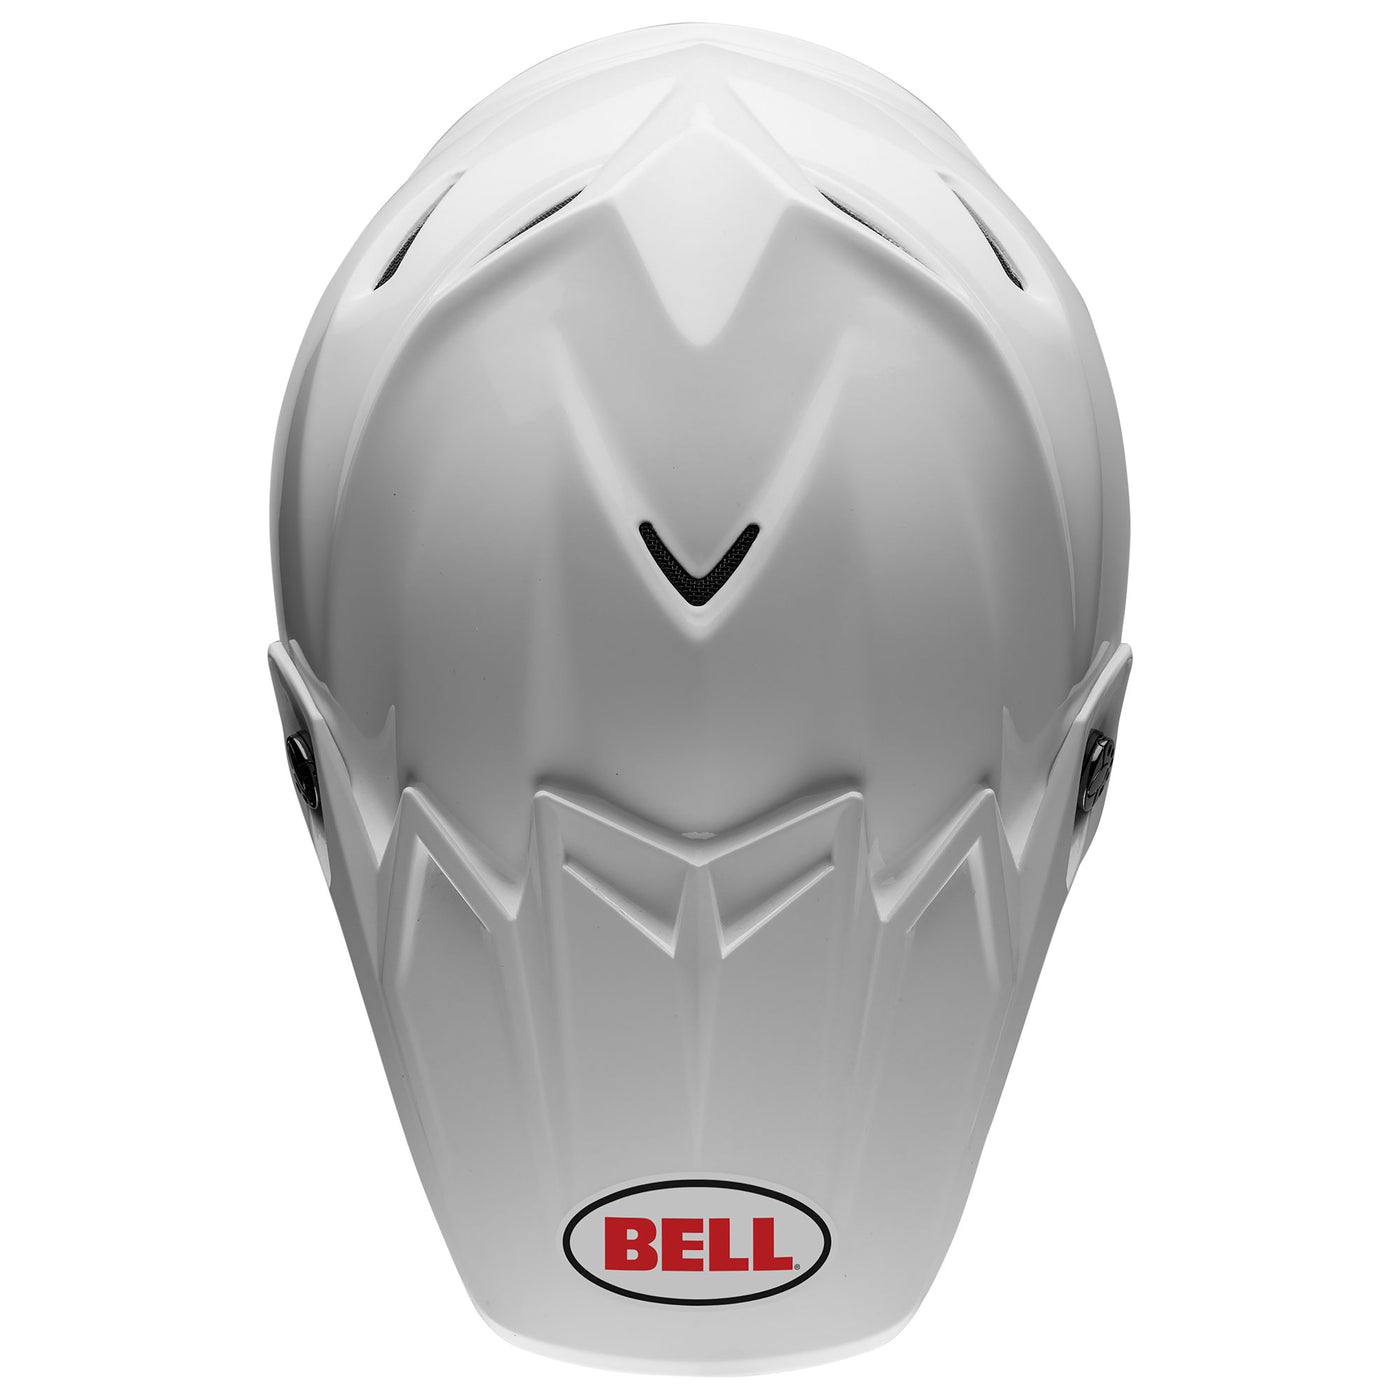 bell moto 9s flex dirt motorcycle helmet gloss white top